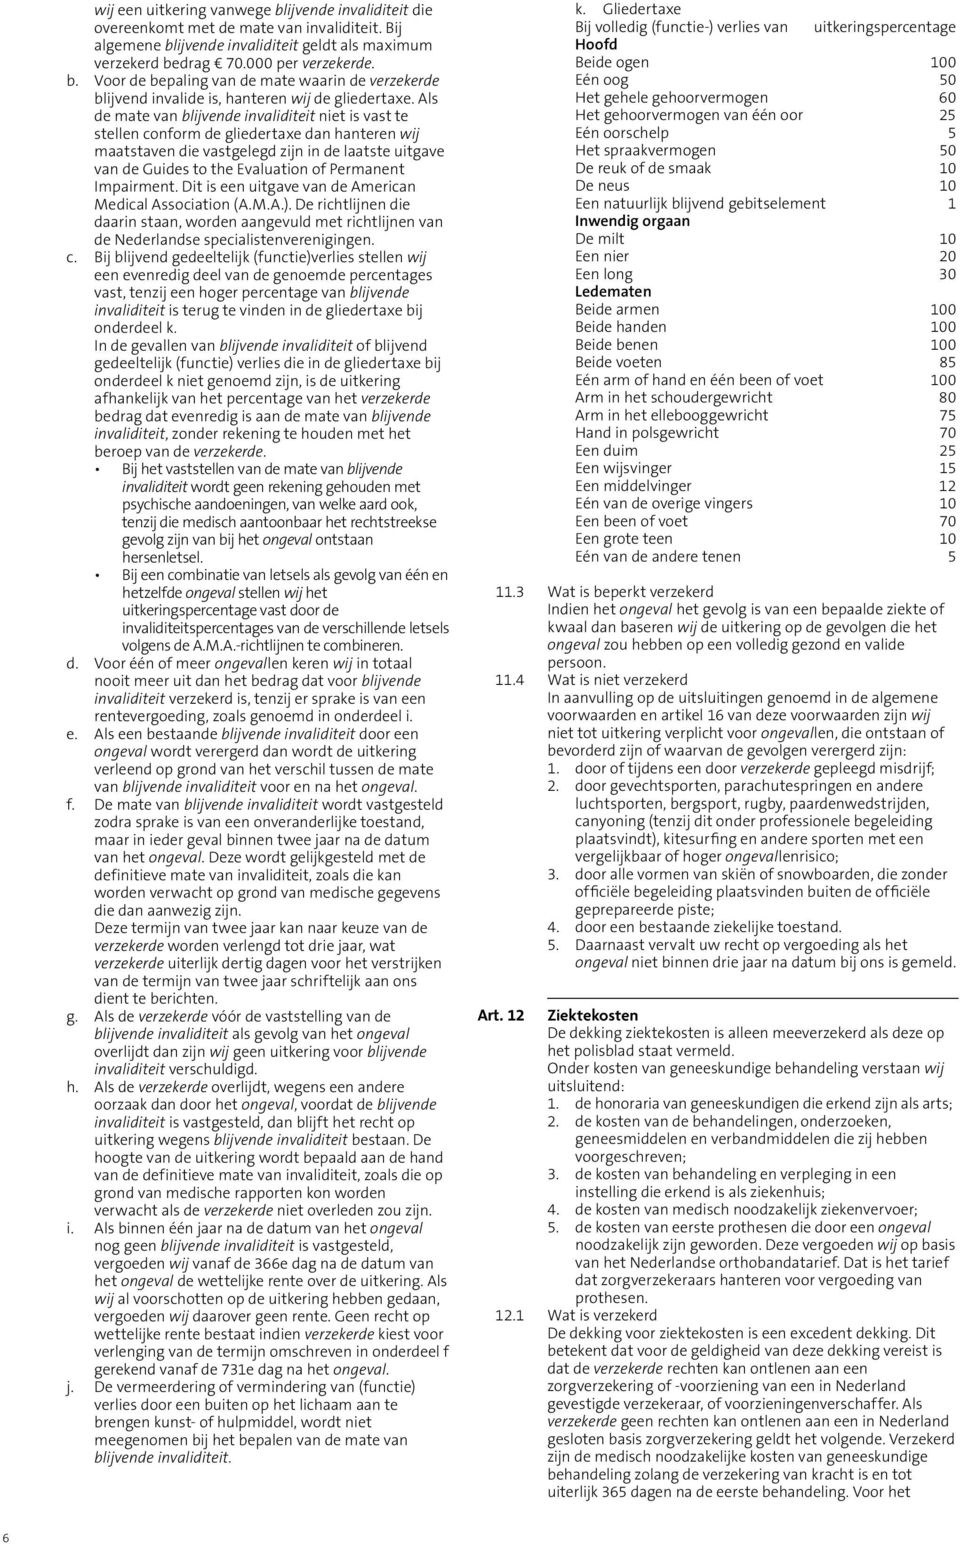 Permanent Impairment. Dit is een uitgave van de American Medical Association (A.M.A.). De richtlijnen die daarin staan, worden aangevuld met richtlijnen van de Nederlandse specialistenverenigingen. c.